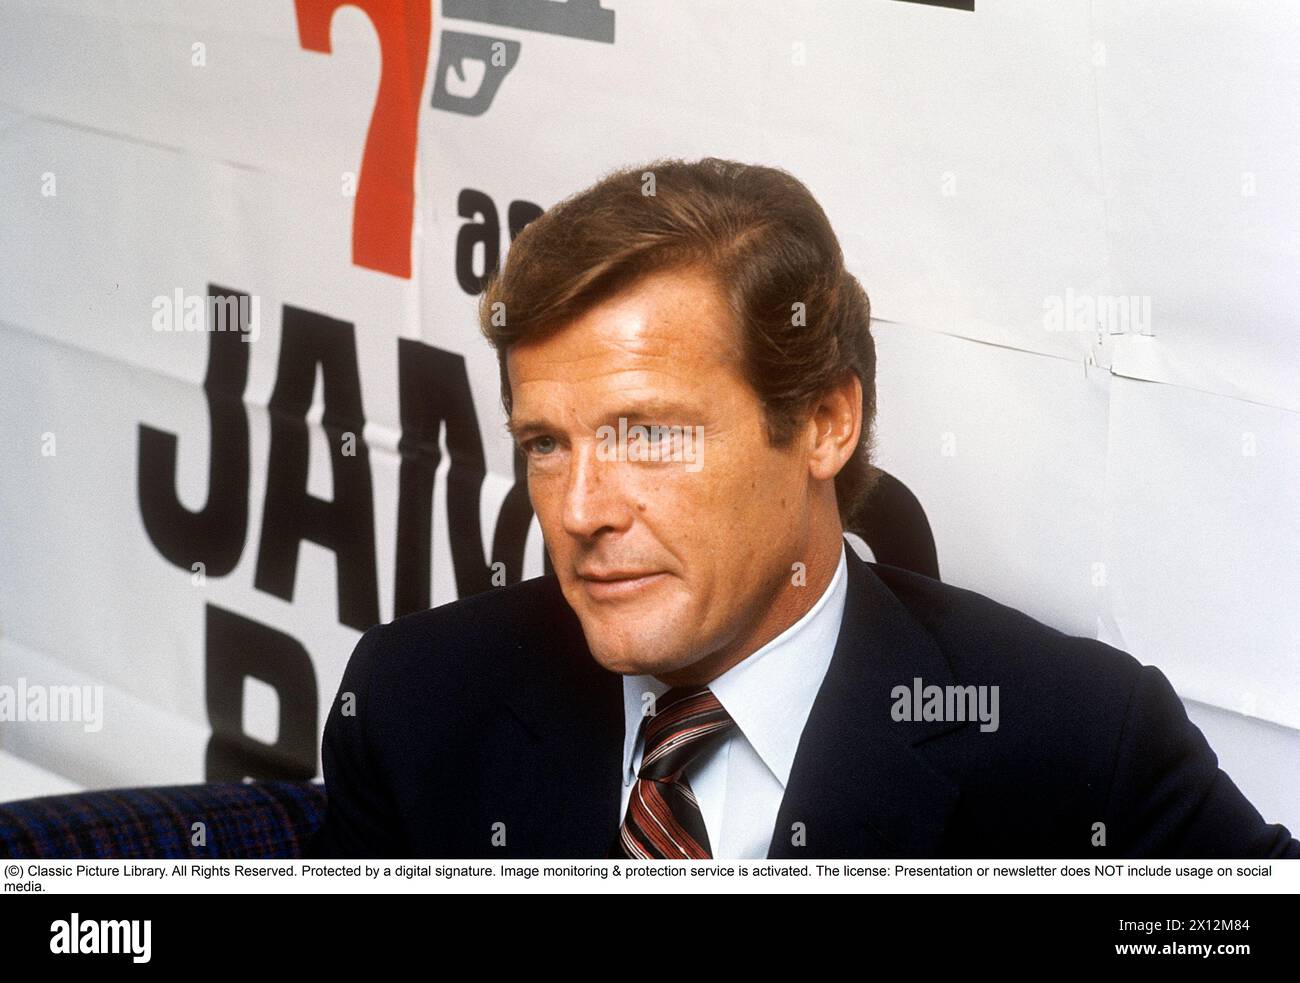 Sir Roger Moore , 1927-2017 lors d'un événement médiatique en lien avec la première suédoise du long métrage Live and let die. Roger Moore est connu pour son rôle d'agent James Bond, jouant le personnage dans sept longs métrages. Octobre 1973 Banque D'Images